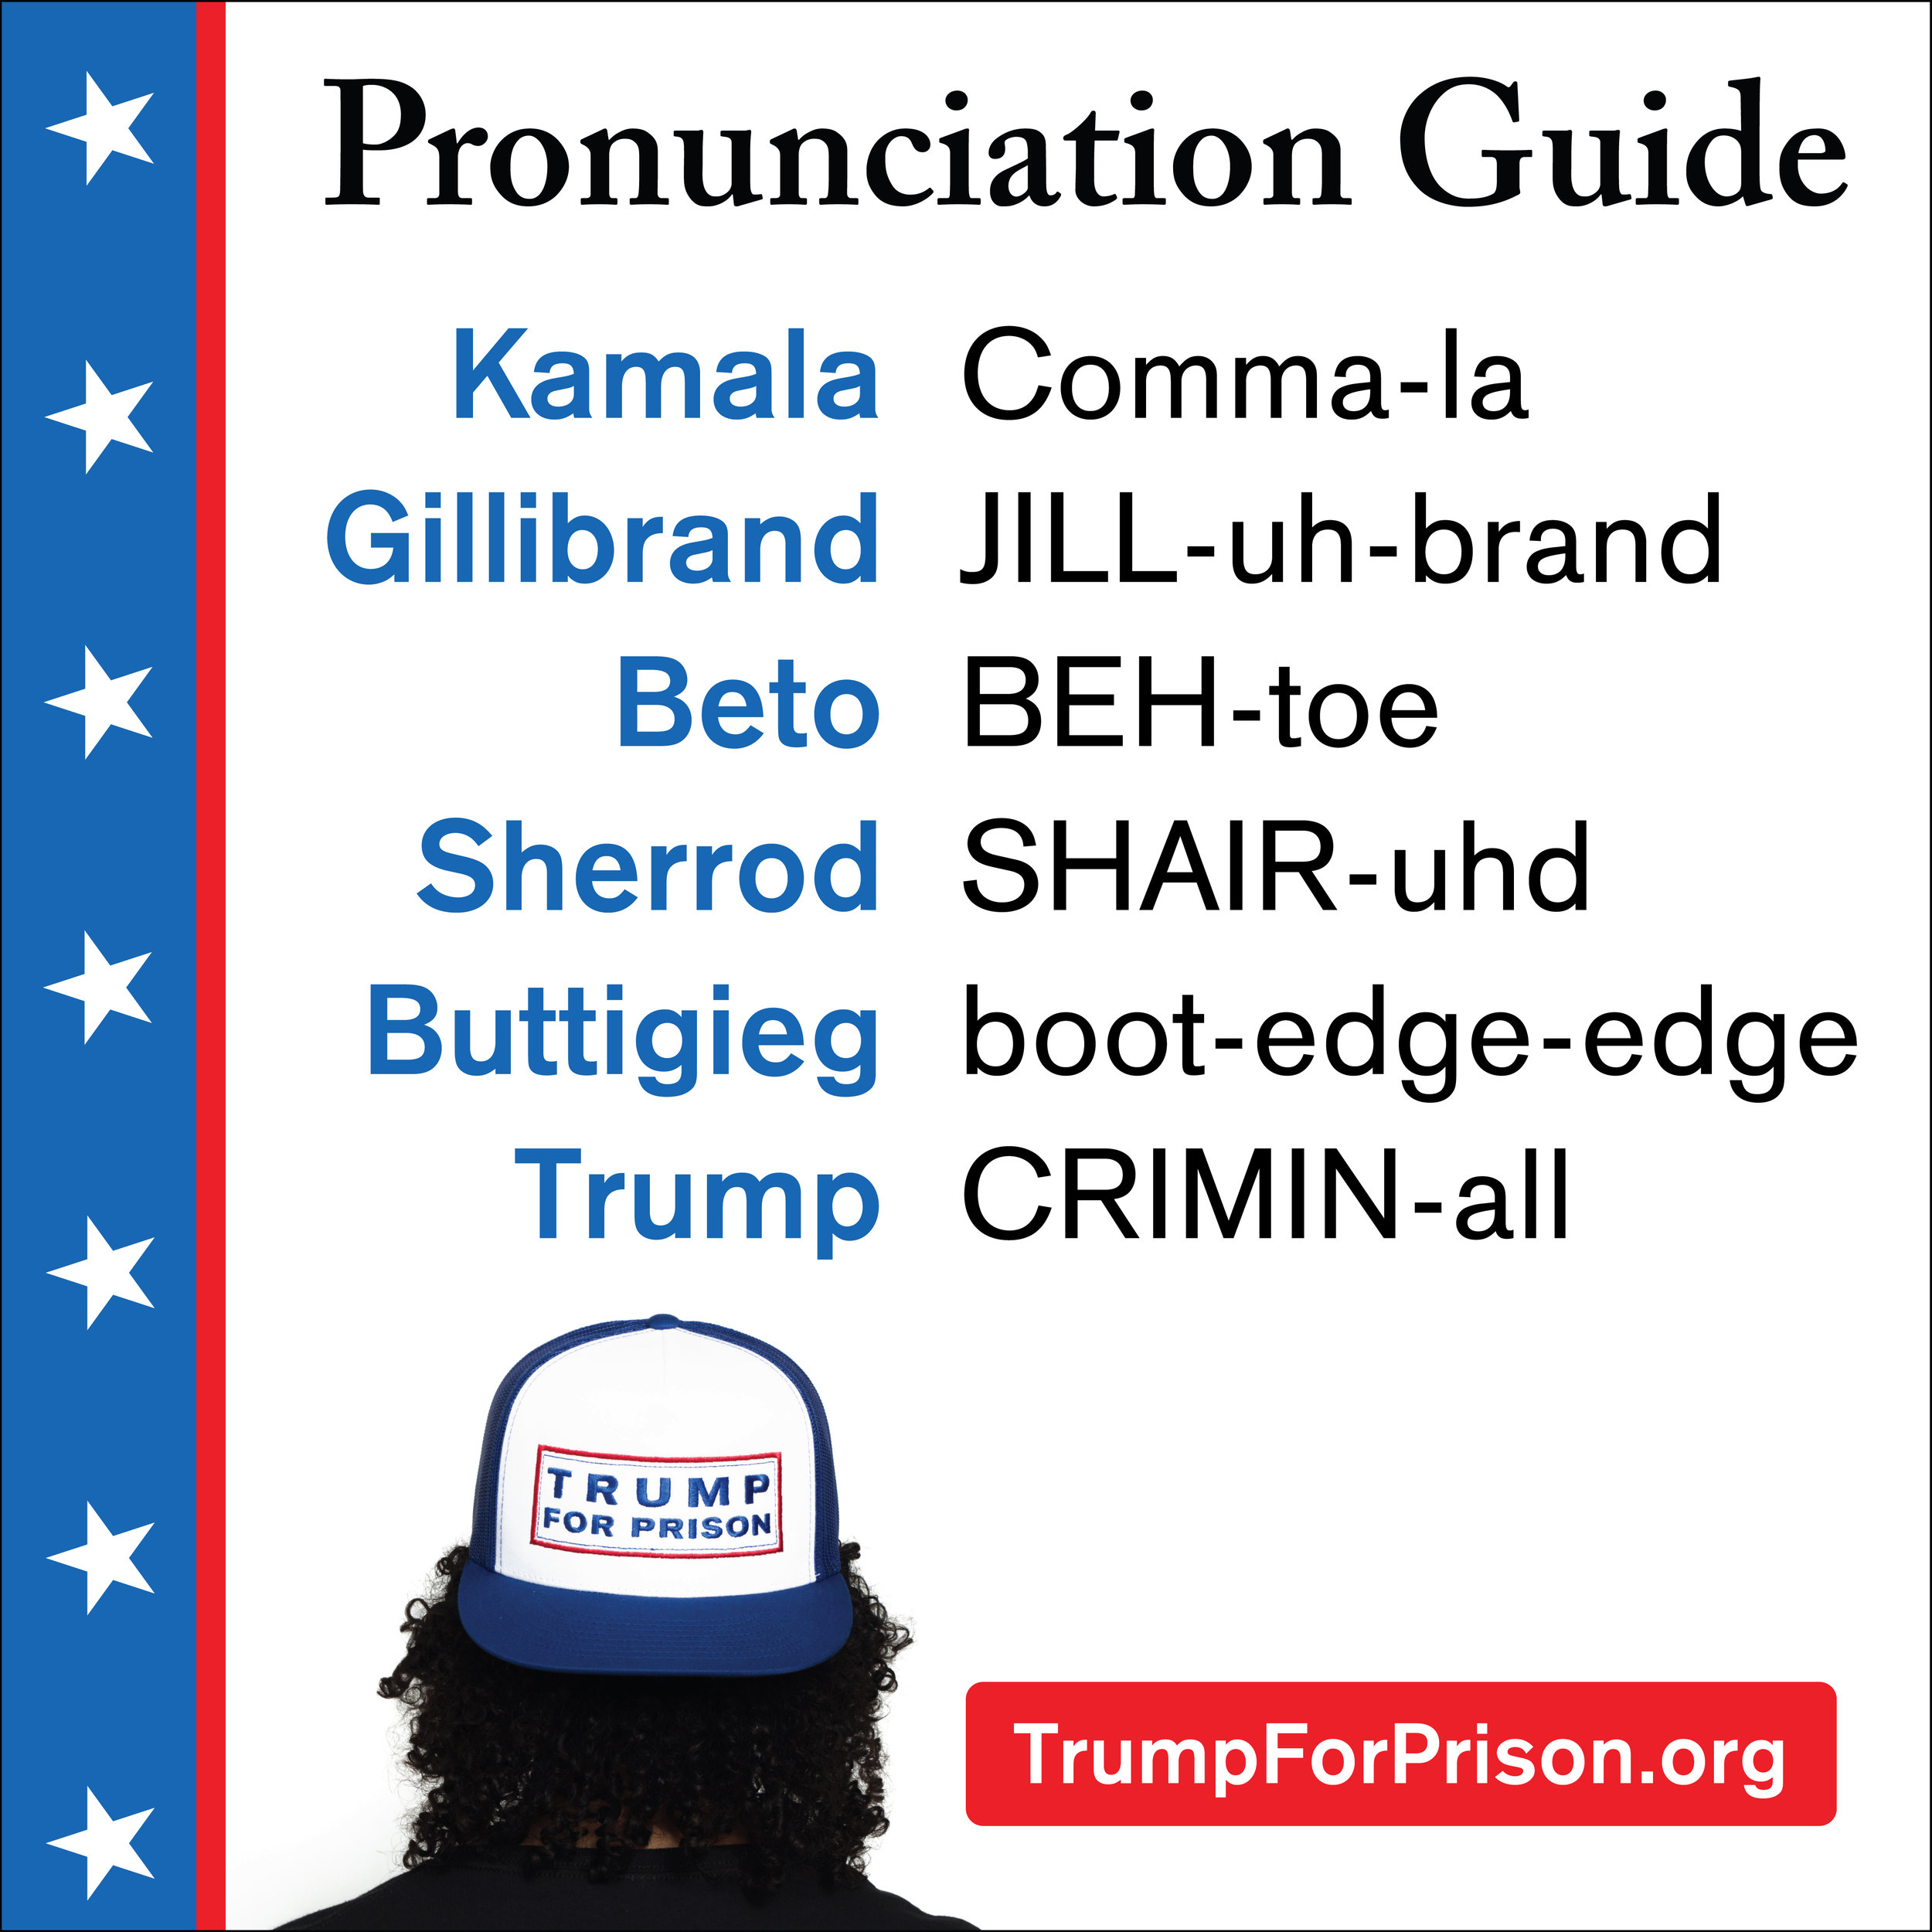 Handy Pronunciation Guide